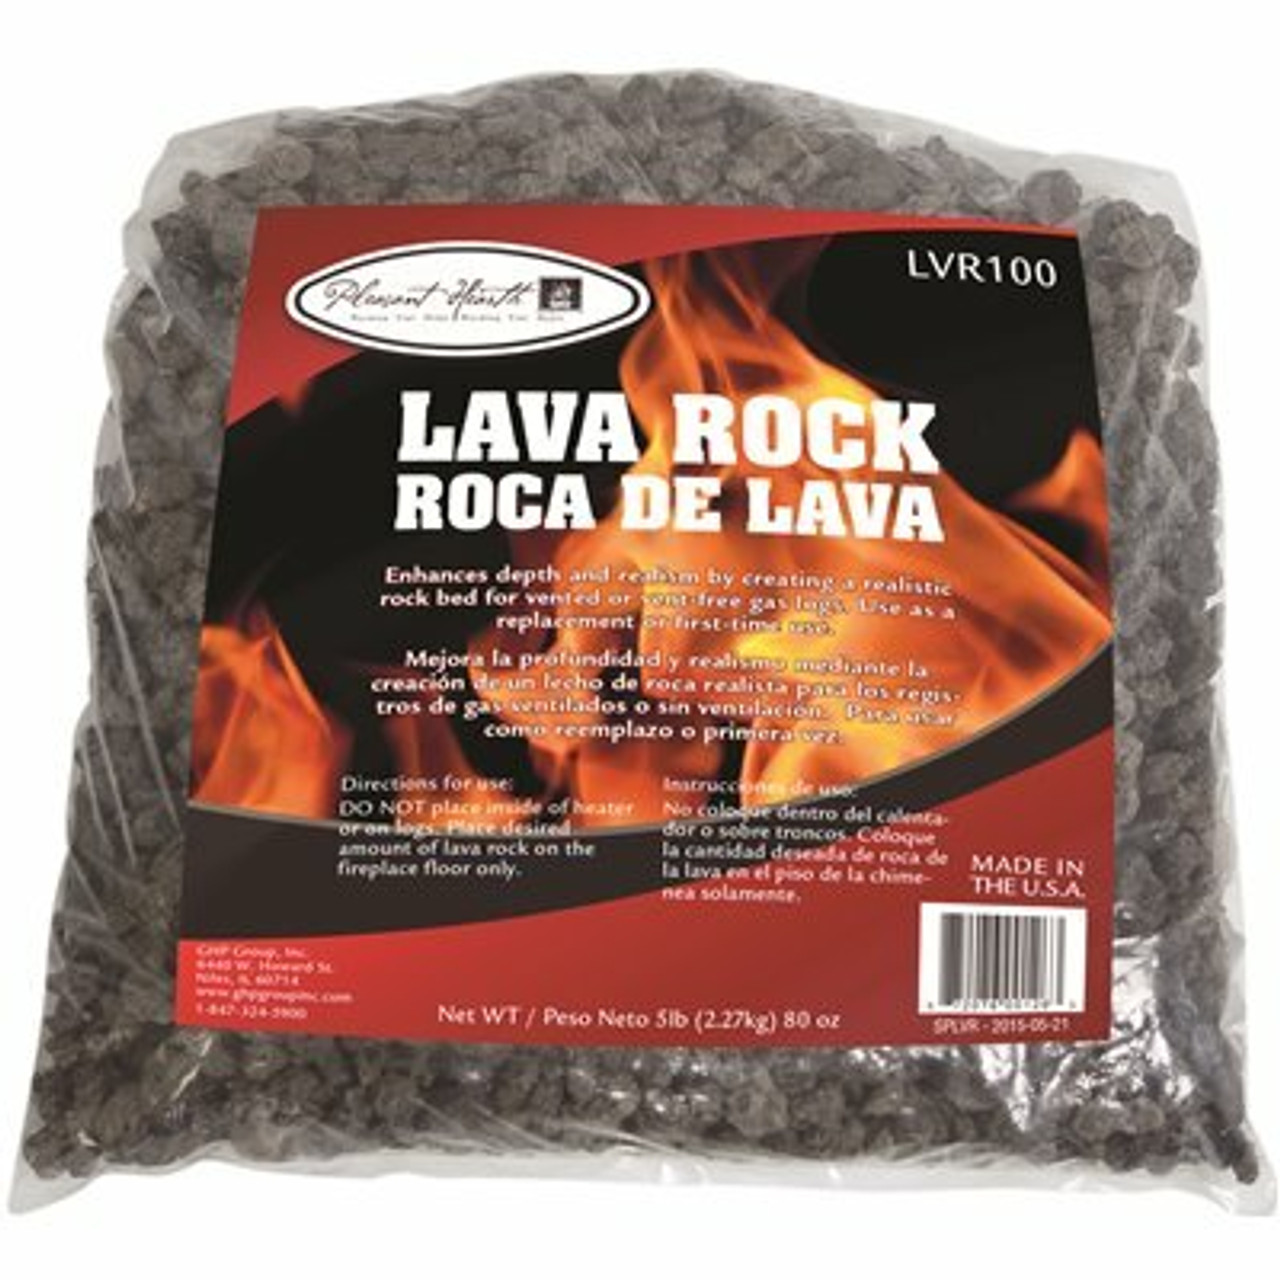 Pleasant Hearth 5 Lbs. Lava Rock Pellet Bag